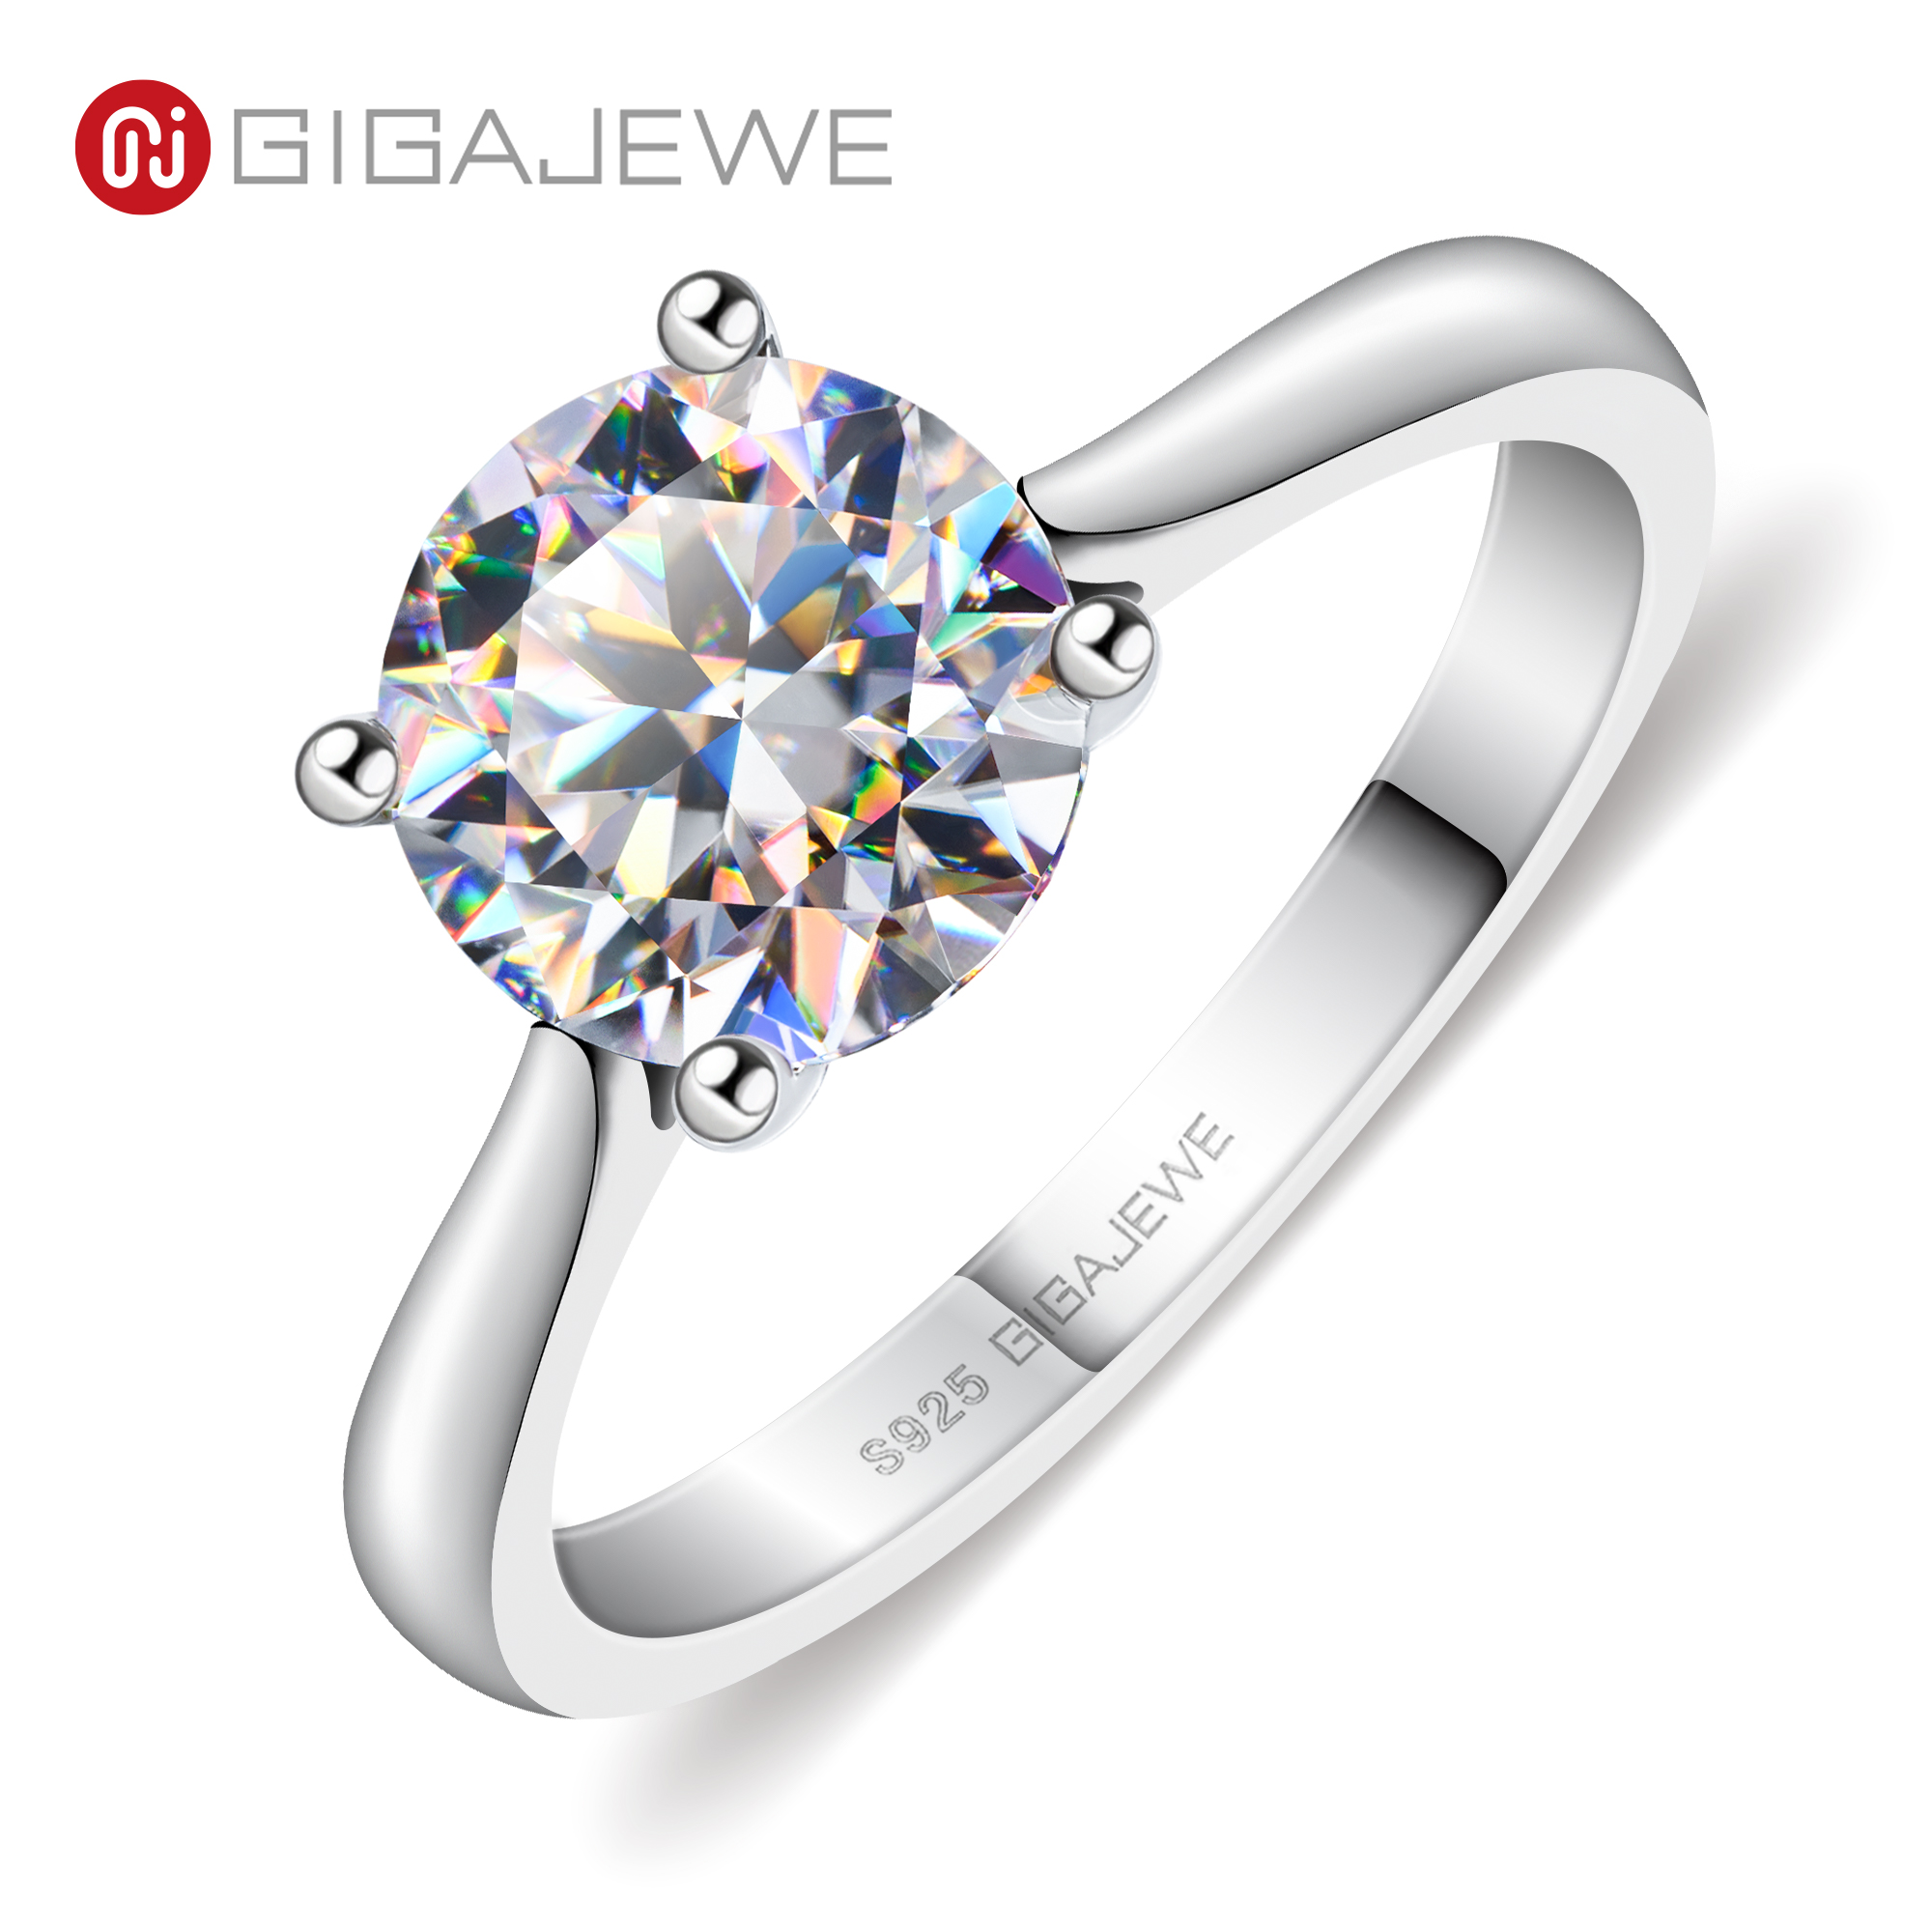 GIGAJEWE 莫桑钻 2.0ct 8.0mm 粉色彩色 VVS1 圆形切割 925 银戒指钻石测试通过时尚女士女孩礼物